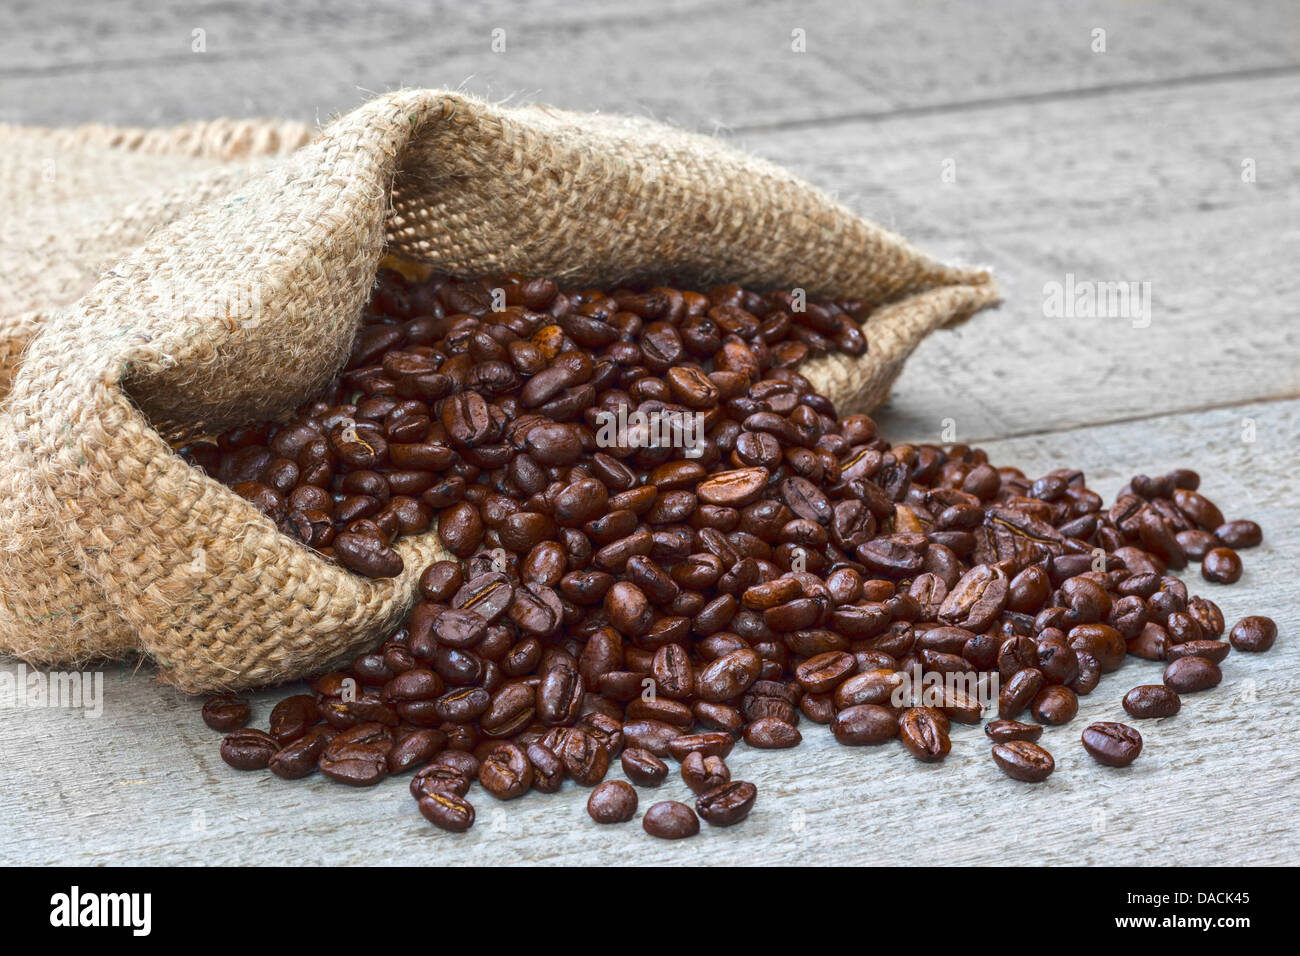 Les grains de café se répandre à partir de sac - grains de café rôti frais de renverser une toile ou un sac de jute sur fond rustique. Banque D'Images